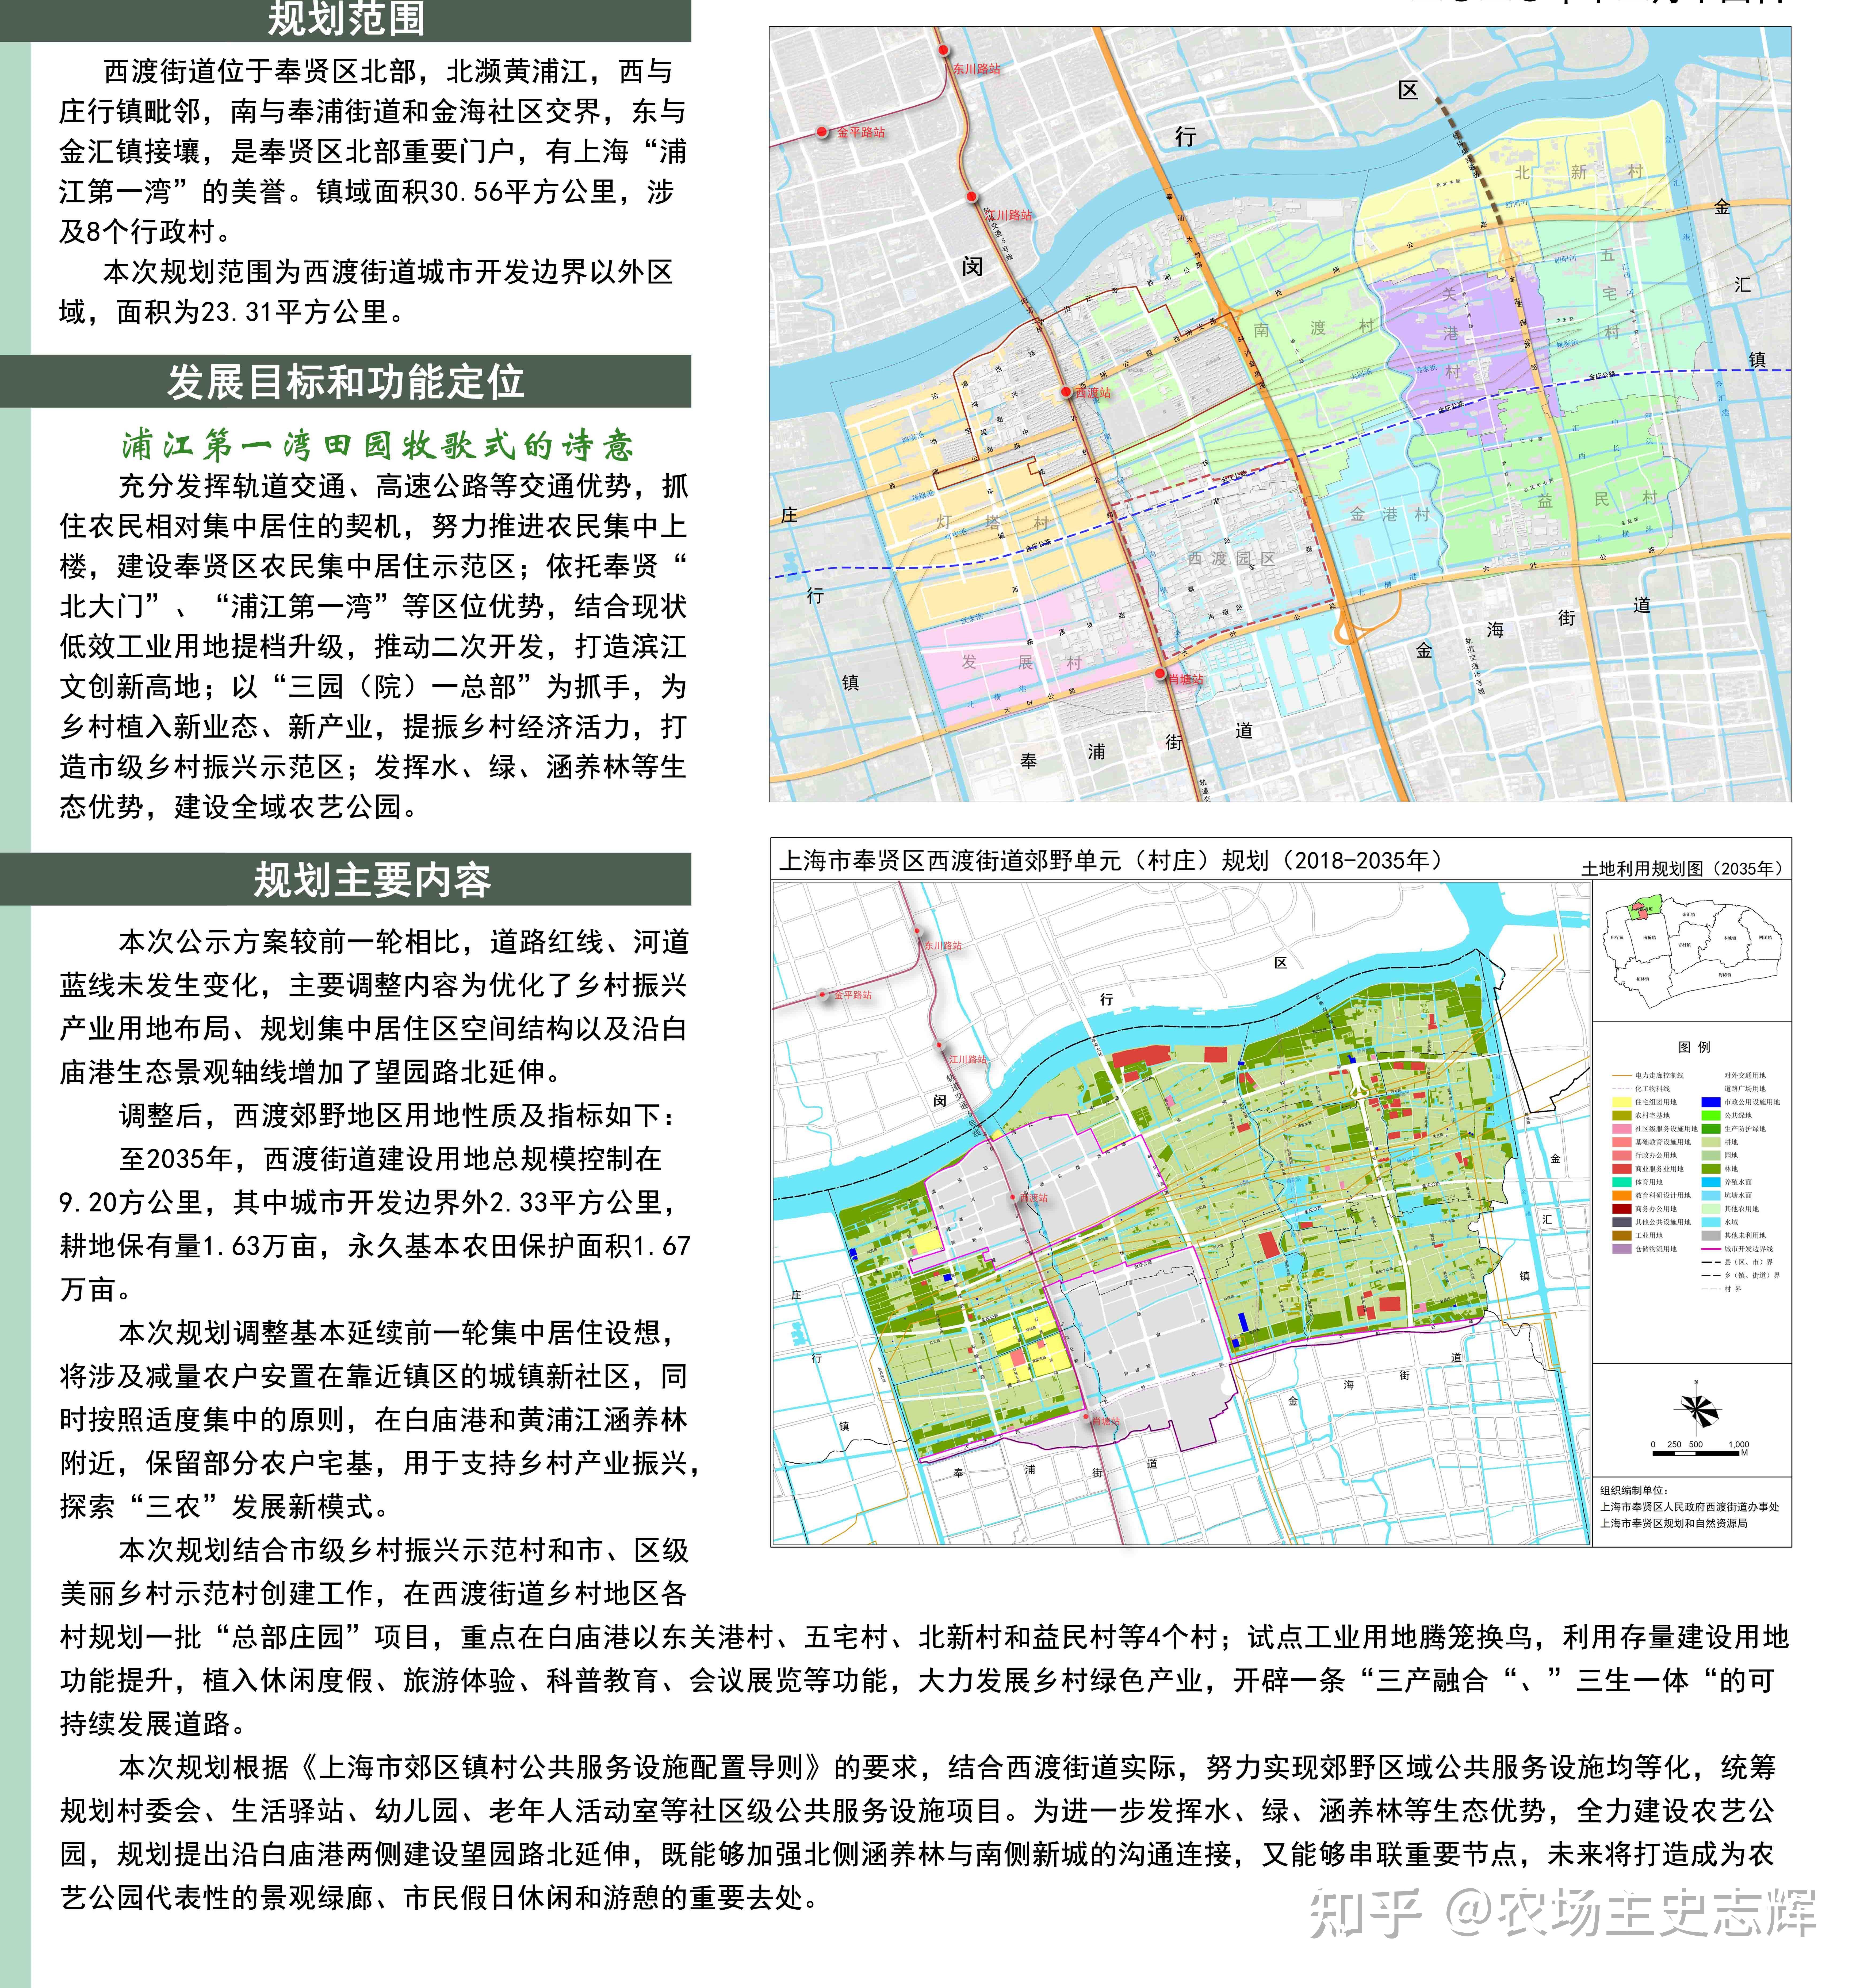 《奉贤区西渡街道郊野单元(村庄)规划(2017-2035年)》公开海湾镇没有